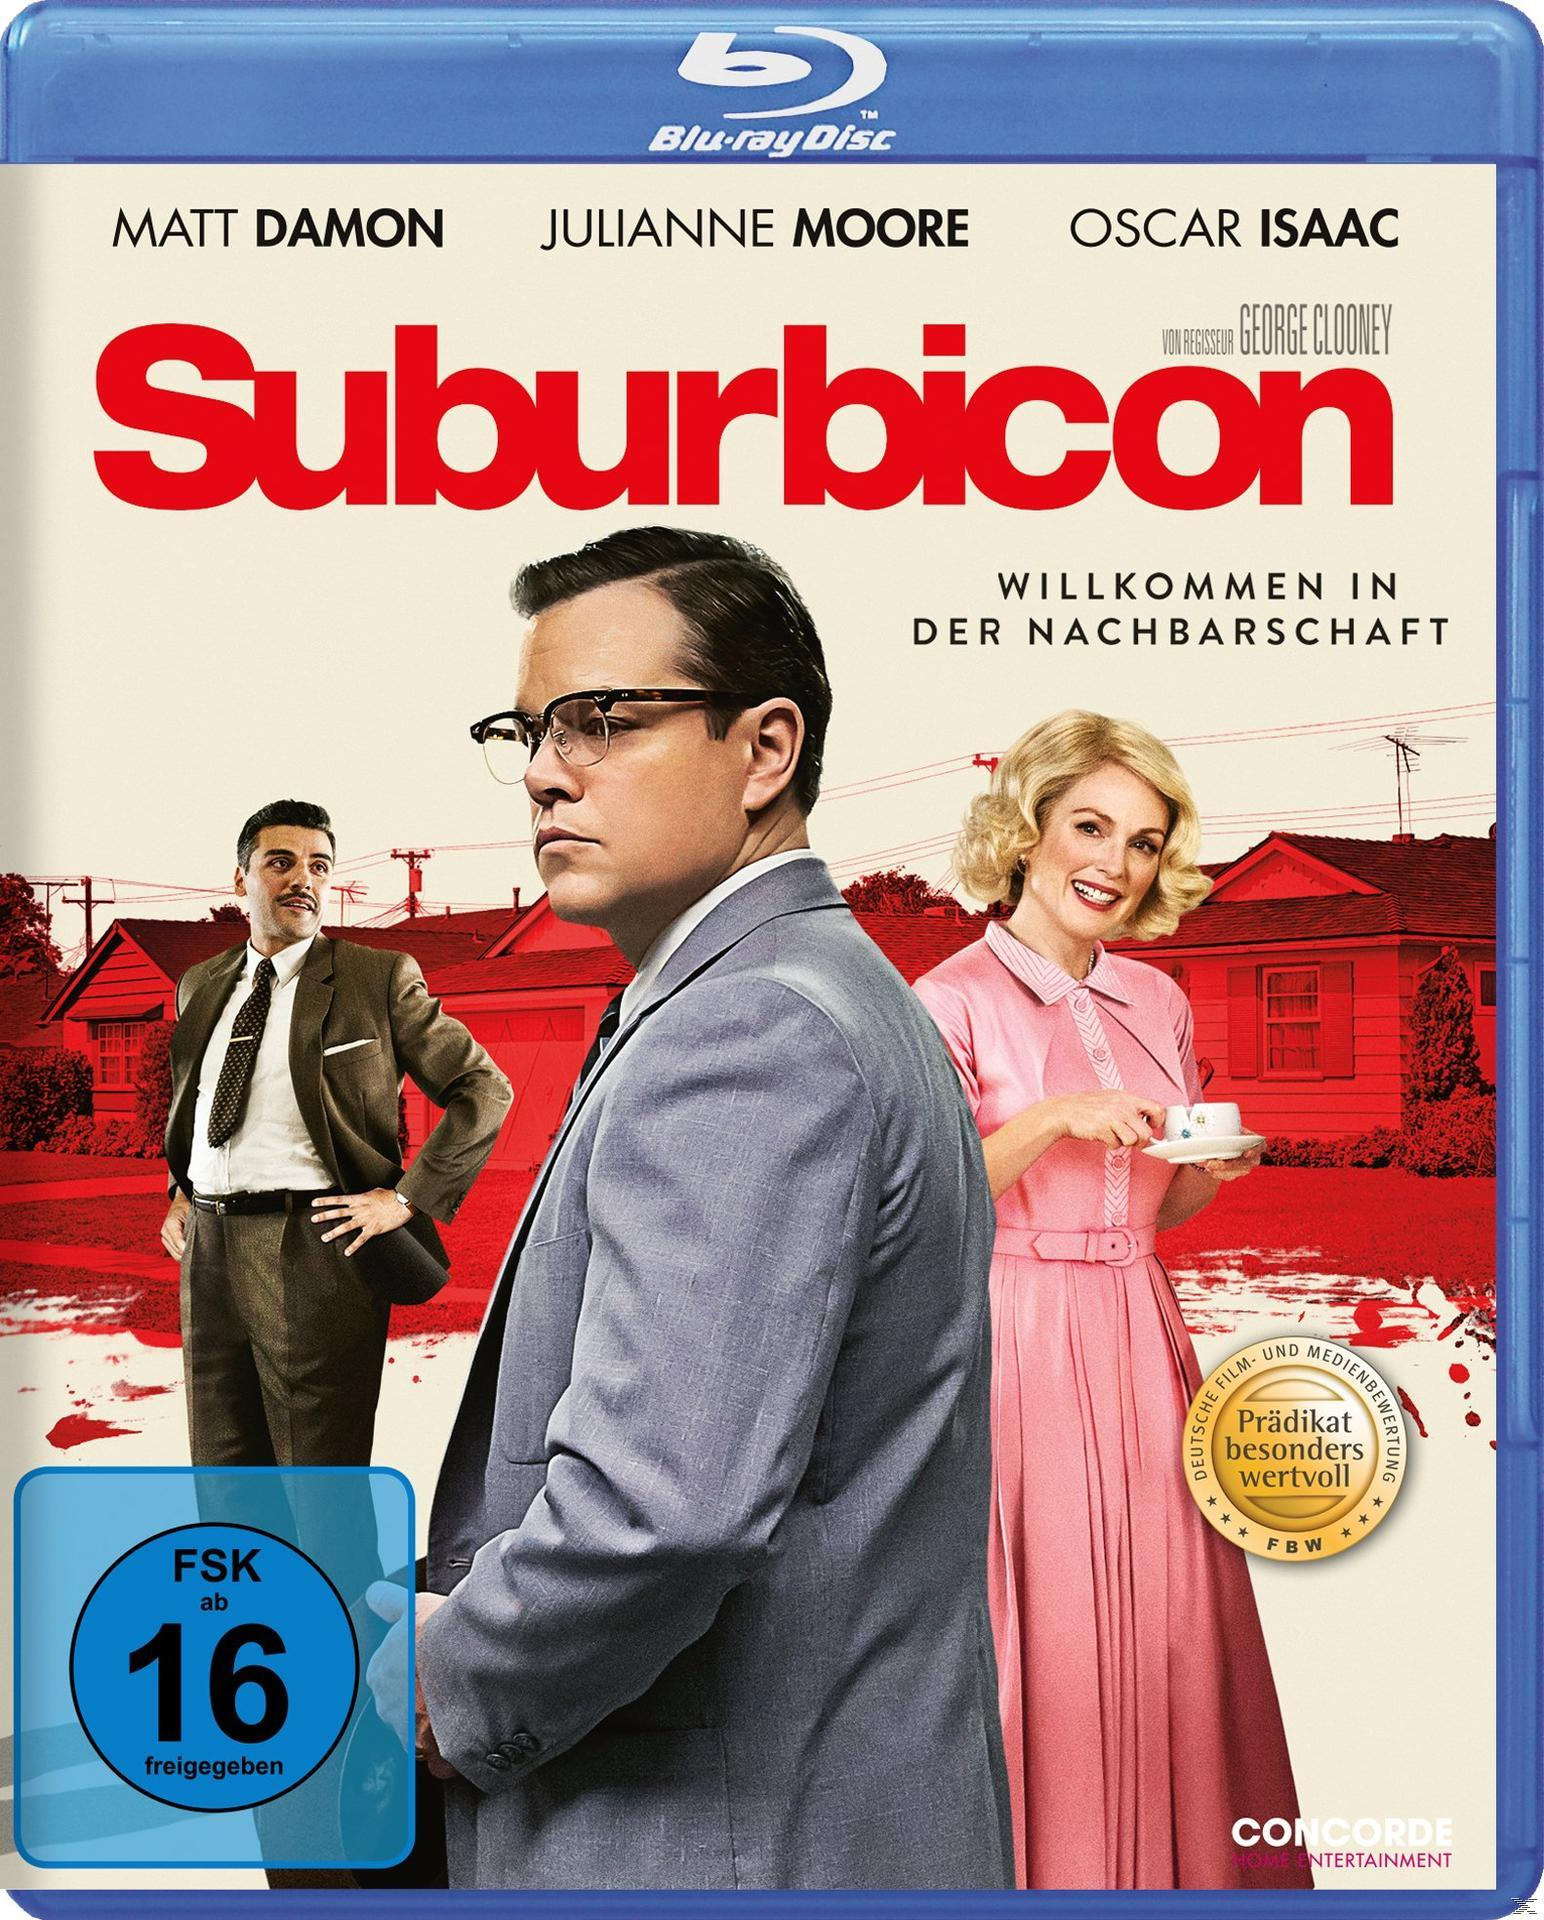 Suburbicon - Willkommen der Blu-ray in Nachbarschaft